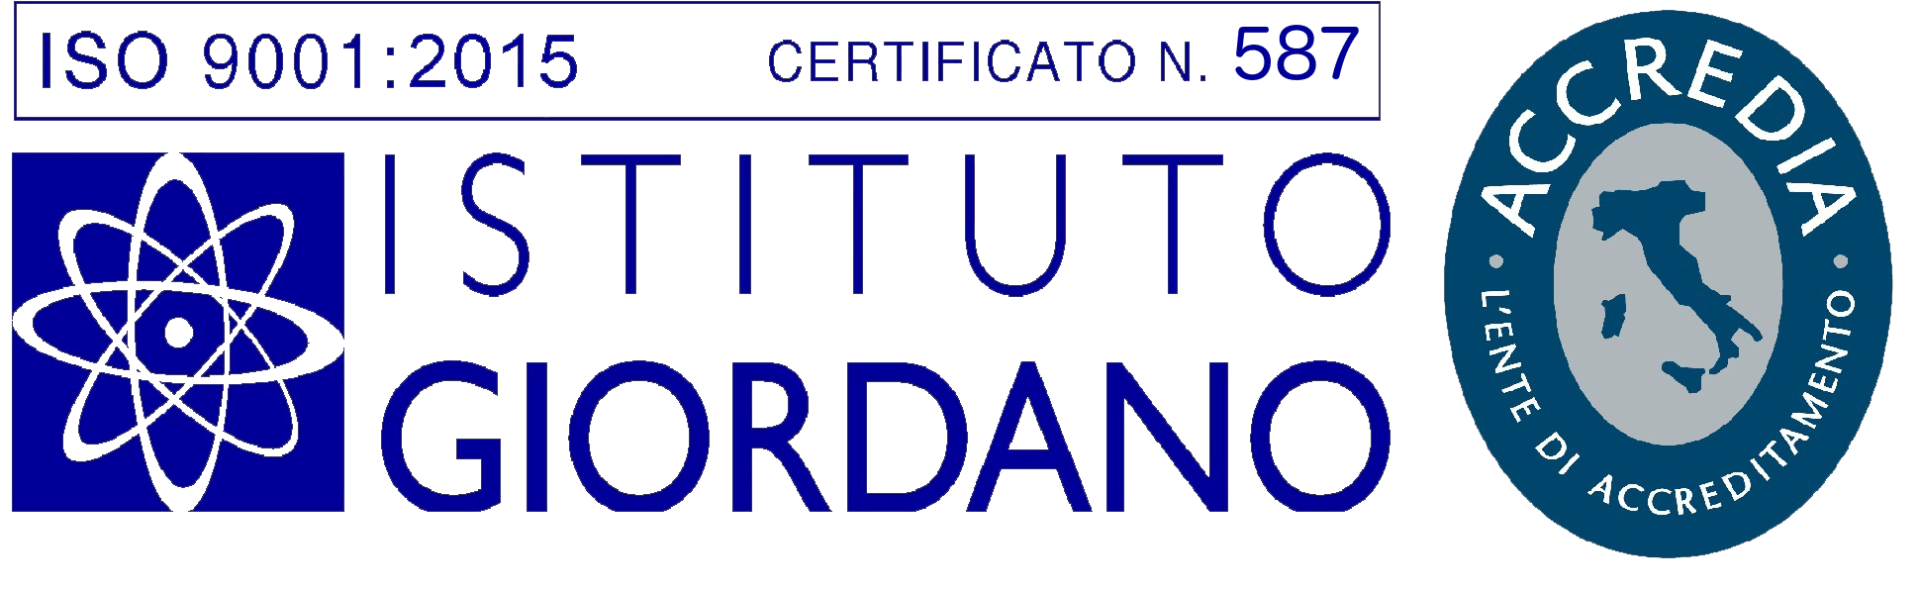 Certificato Qualità n. 587 ISO 9001:2015 - Drill Geosystem